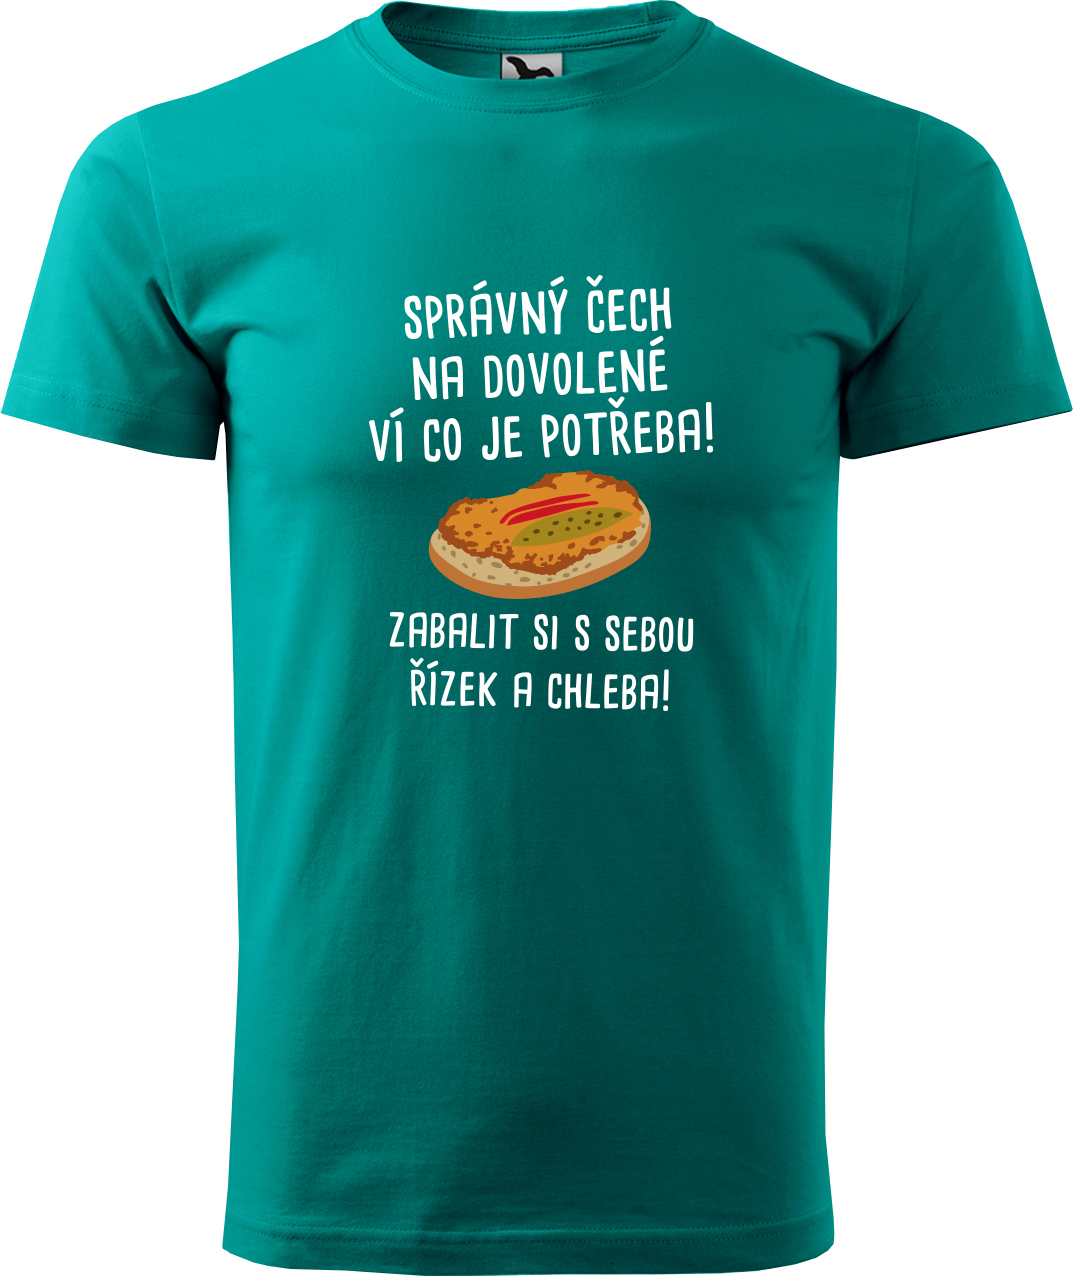 Pánské cestovatelské tričko - Správný Čech na dovolené, ví co je potřeba! Velikost: S, Barva: Emerald (19), Střih: pánský